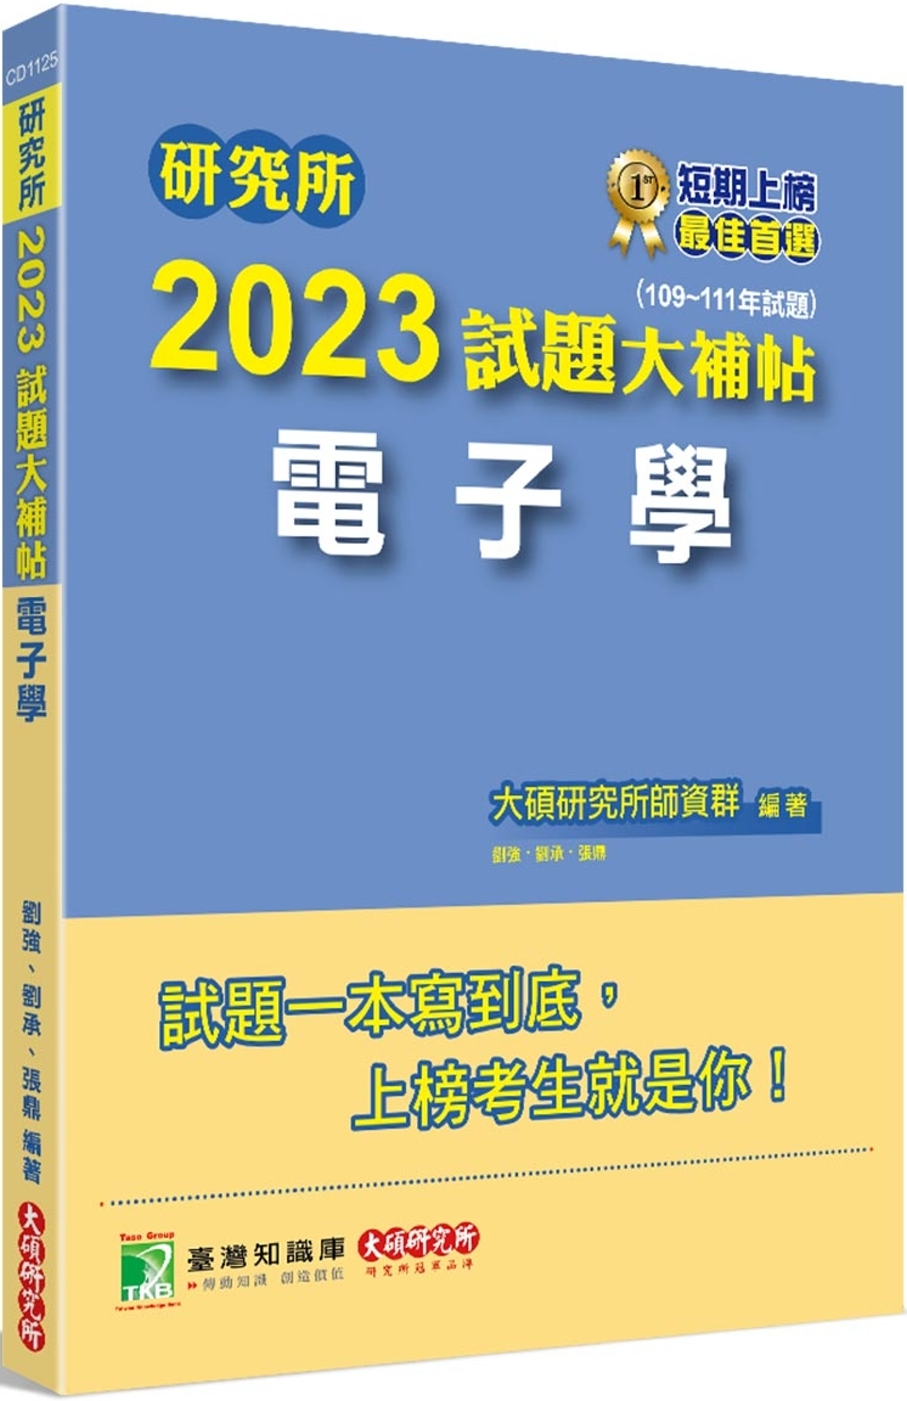 研究所2023試題大補帖【電子學】(109~111年試題)[...